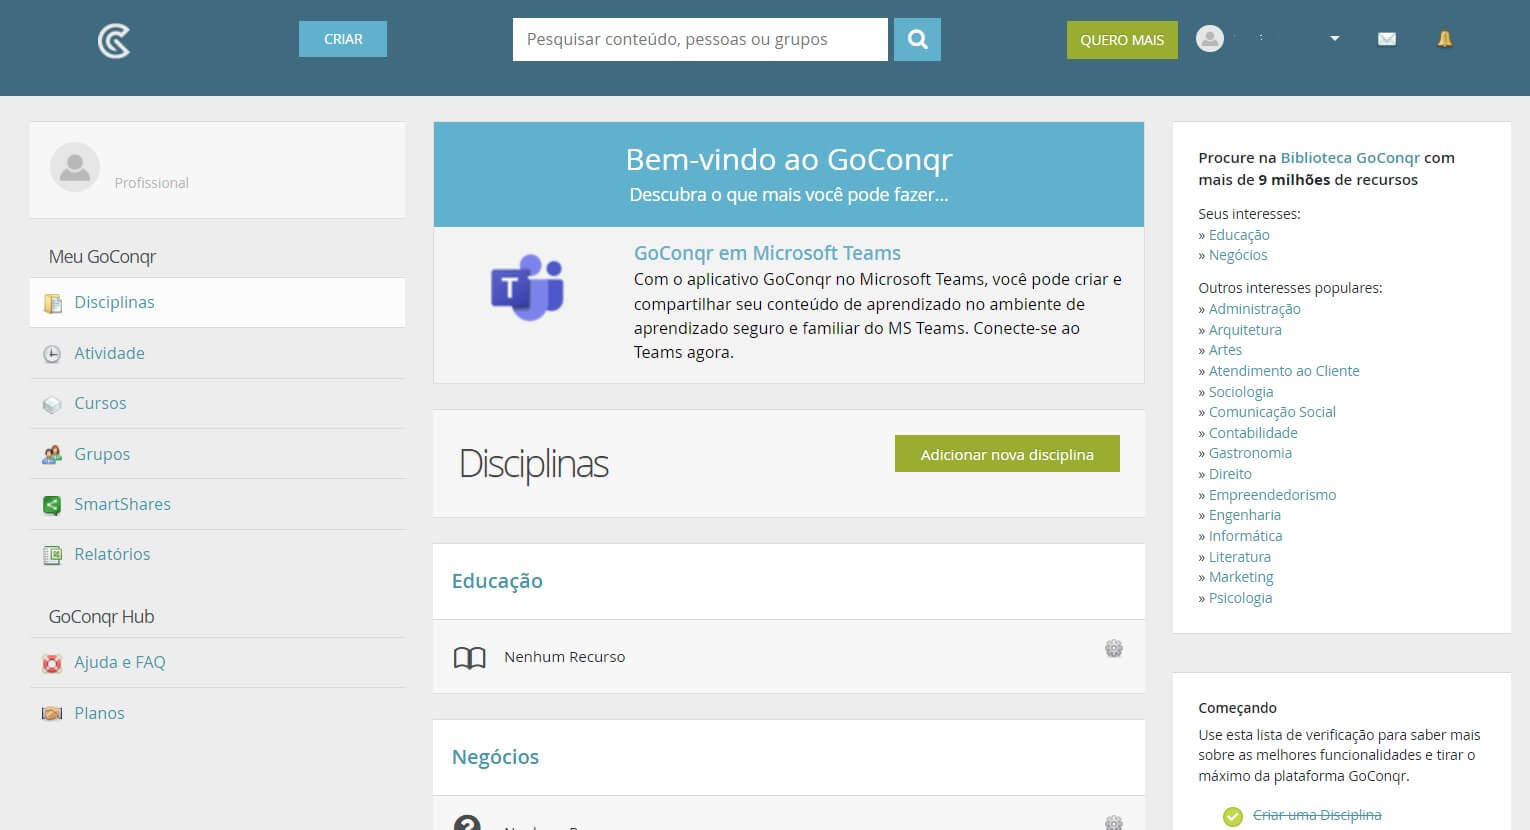 página principal da plataforma GoConqr e seus recursos